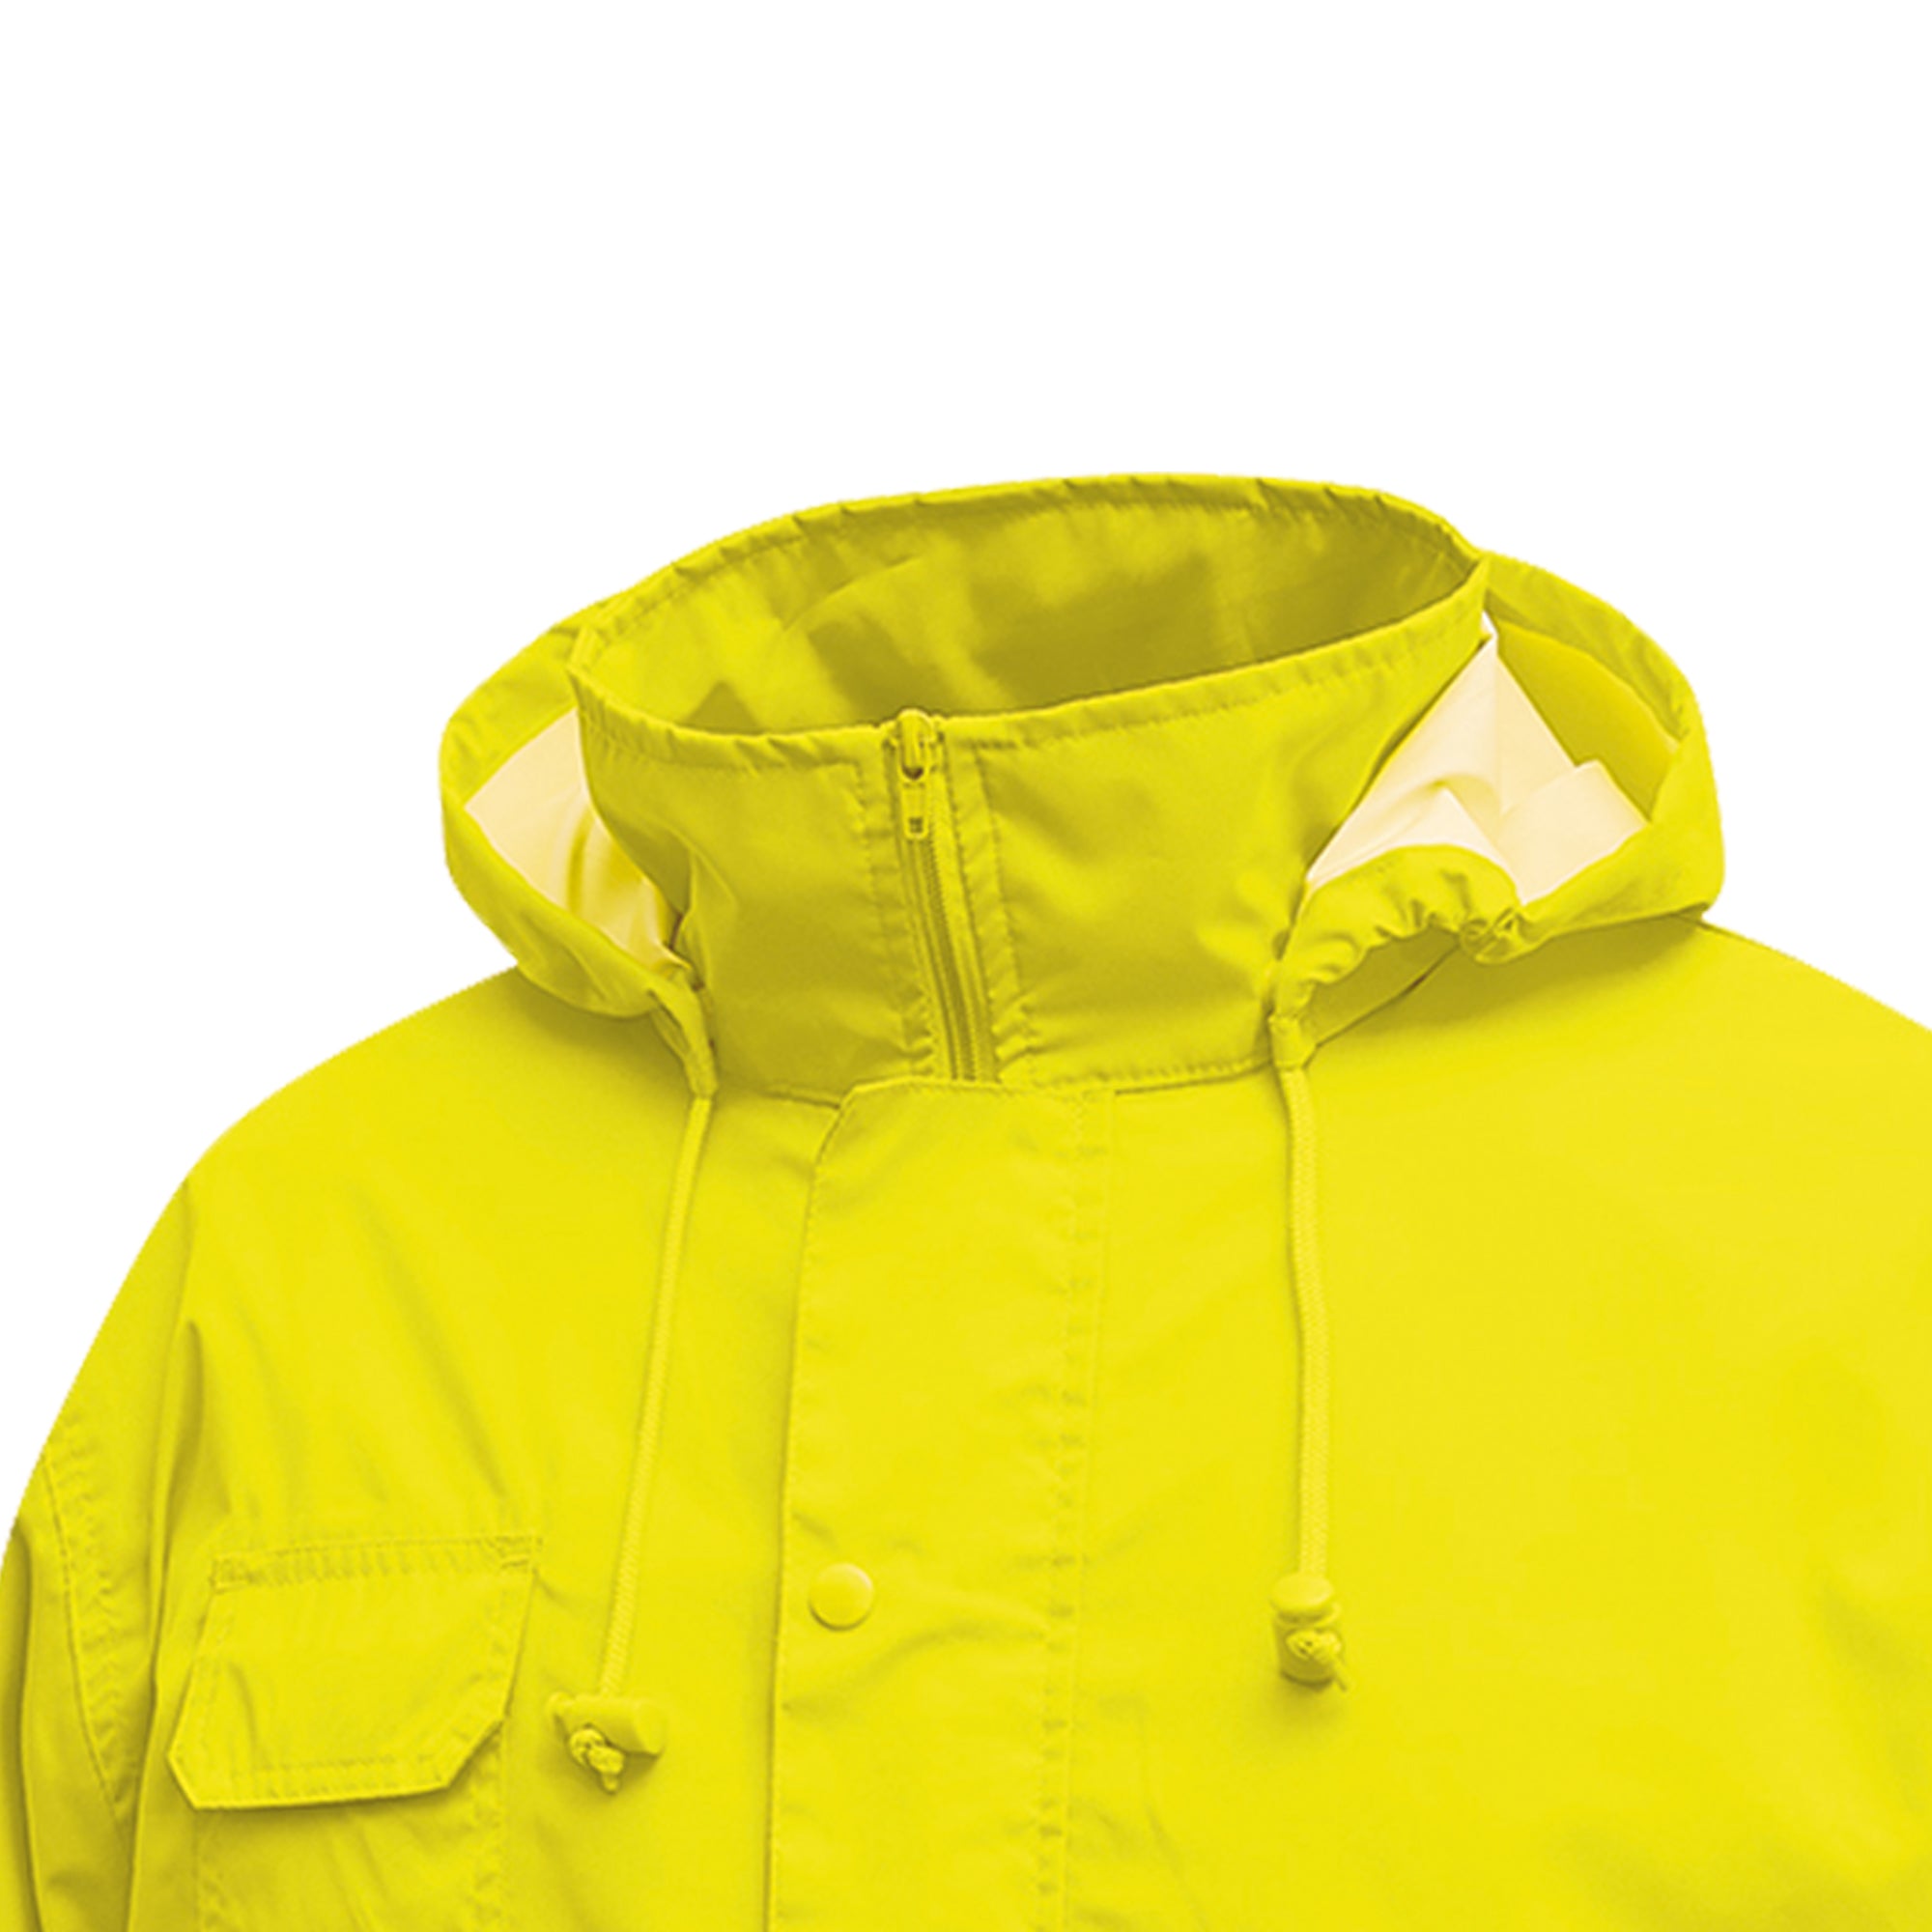 u-power-completo-antipioggia-alta-visibilita-cover-giallo-fluo-taglia-xl